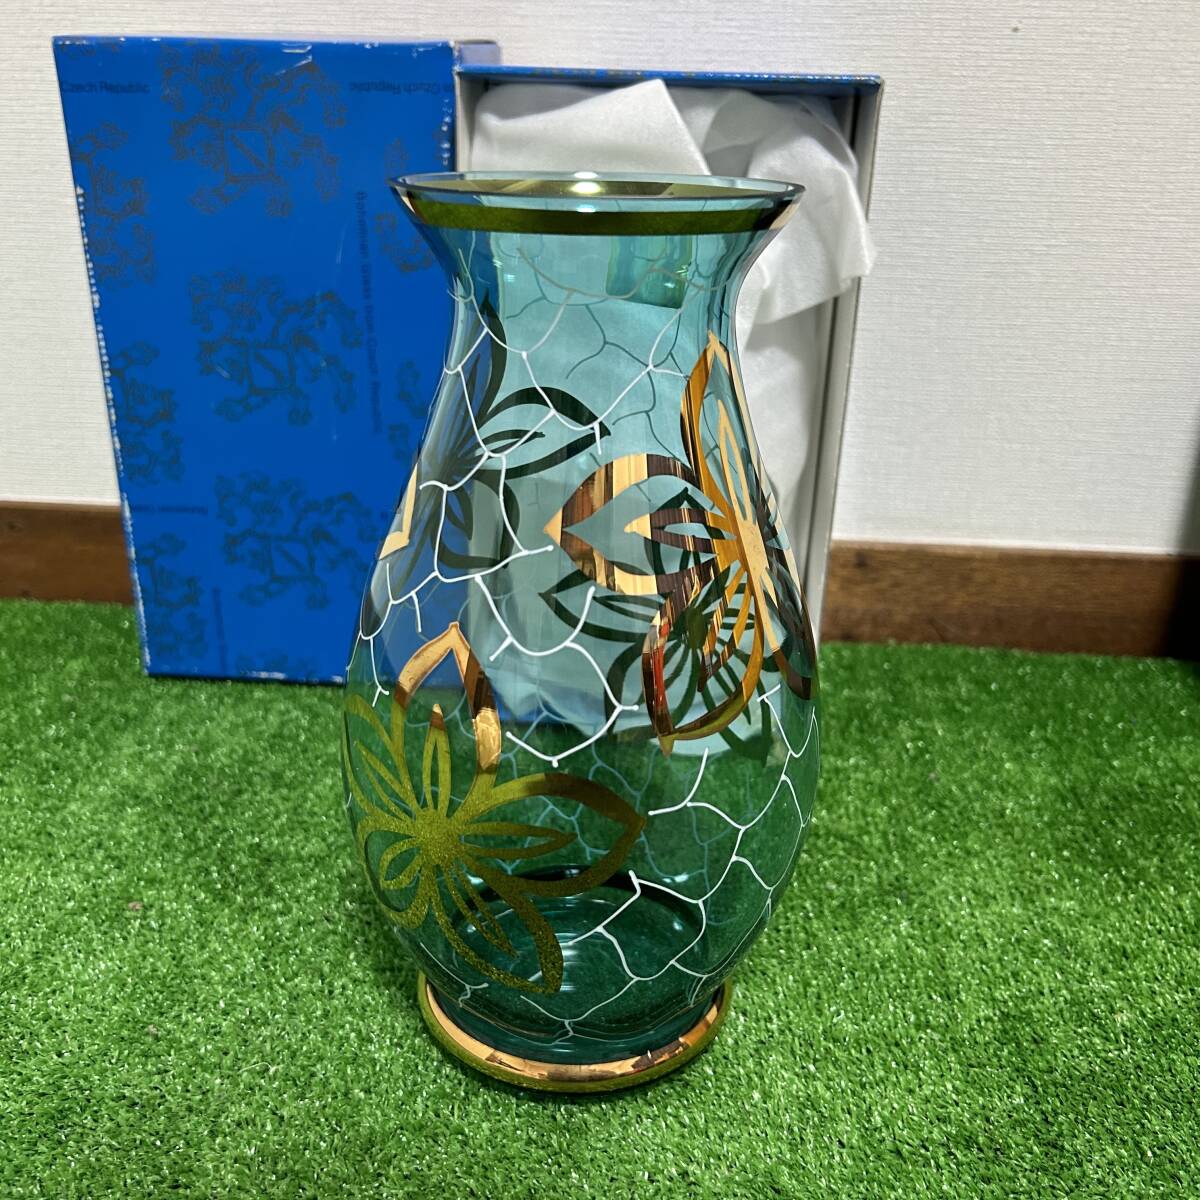  ボヘミア/BOHEMIA グラス ペアセット 保管品 クリスタルグラス ハンドカット ボヘミアングラス Bohemian Glass from Czech Republic の画像5